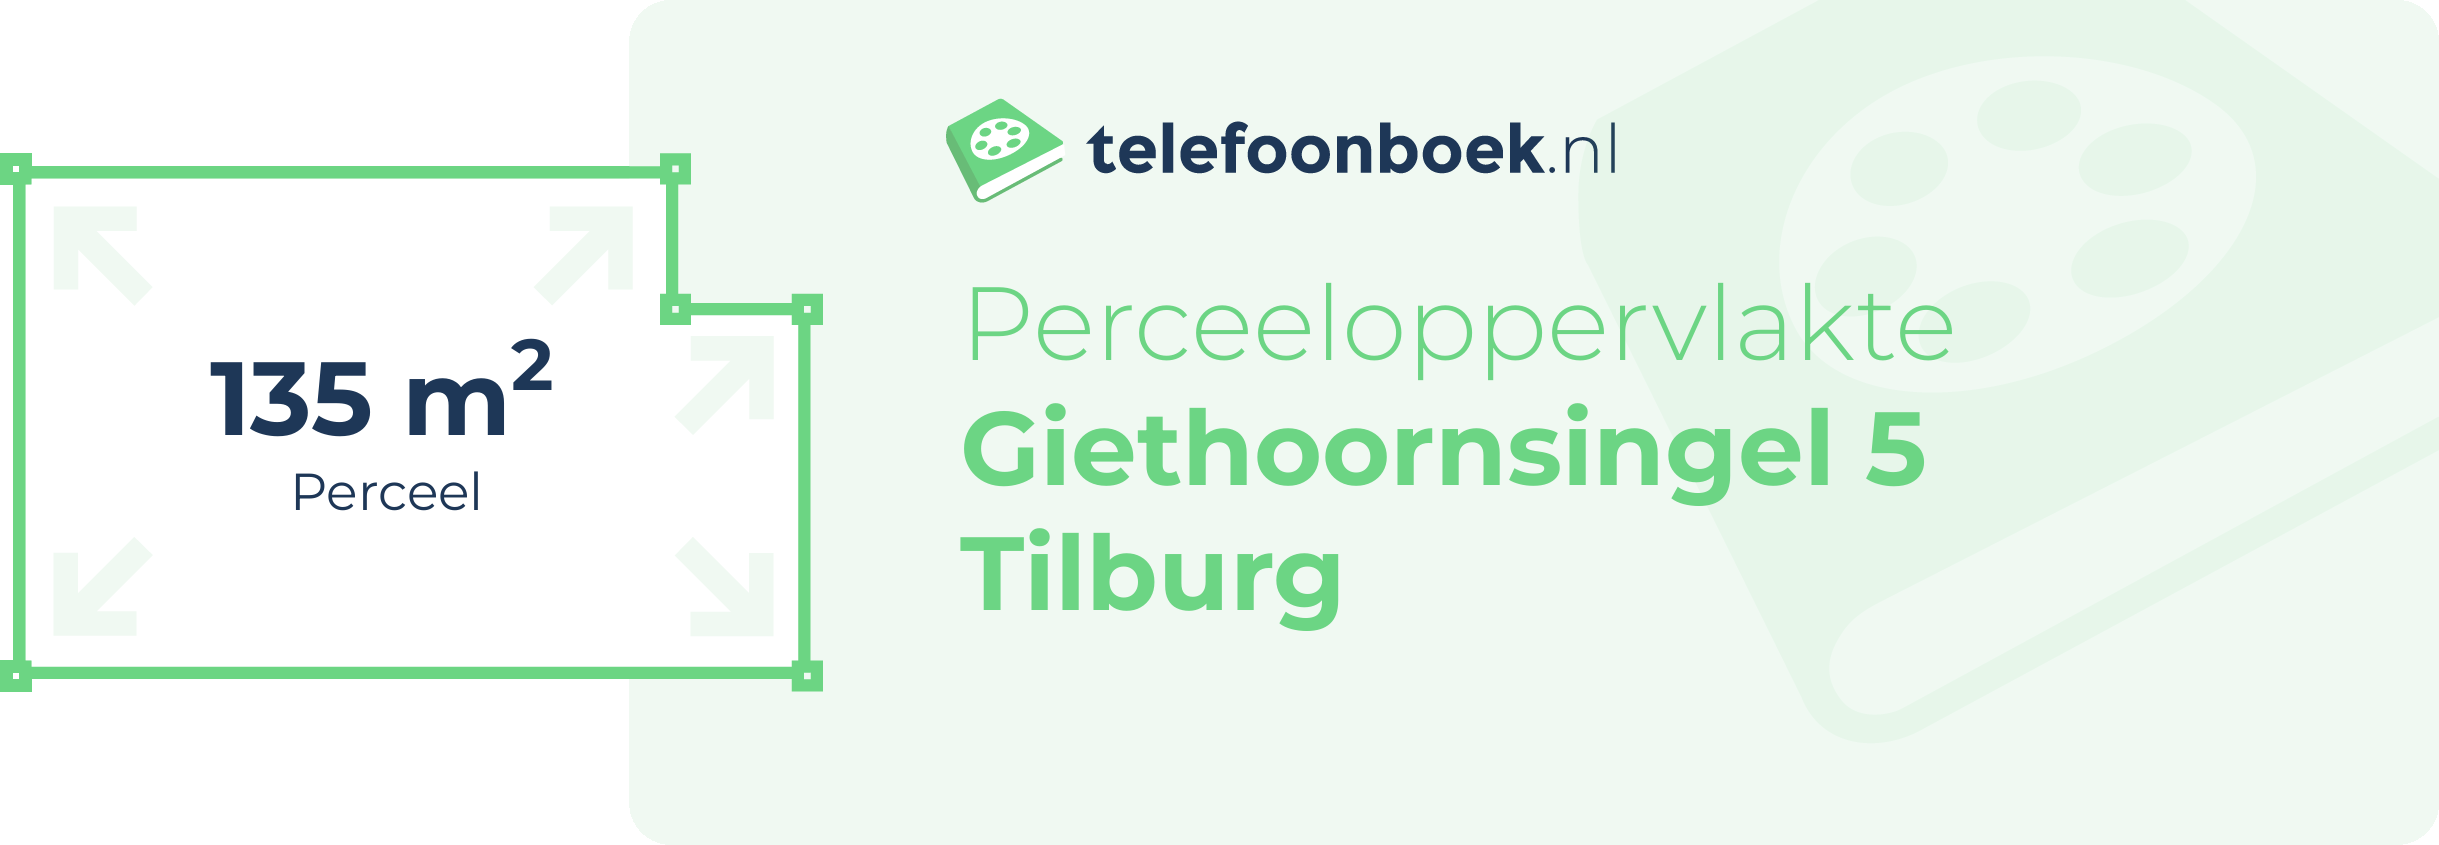 Perceeloppervlakte Giethoornsingel 5 Tilburg